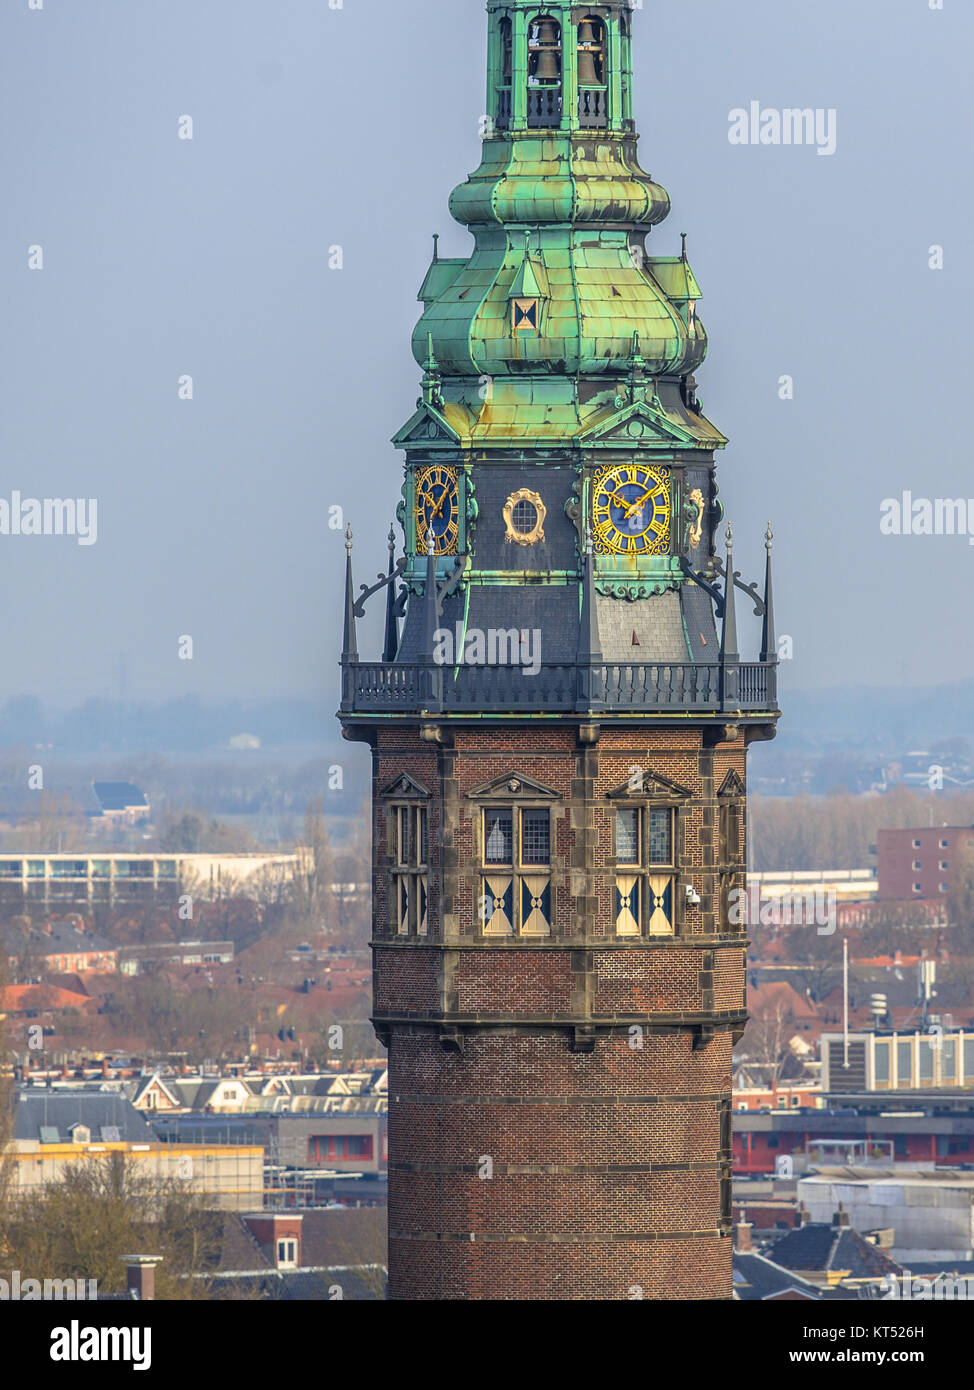 GRONINGEN, Pays-Bas - 17 SEP 2016 : Détail de la tour de la Groningue, l'un des eyecatchers de la ville Banque D'Images